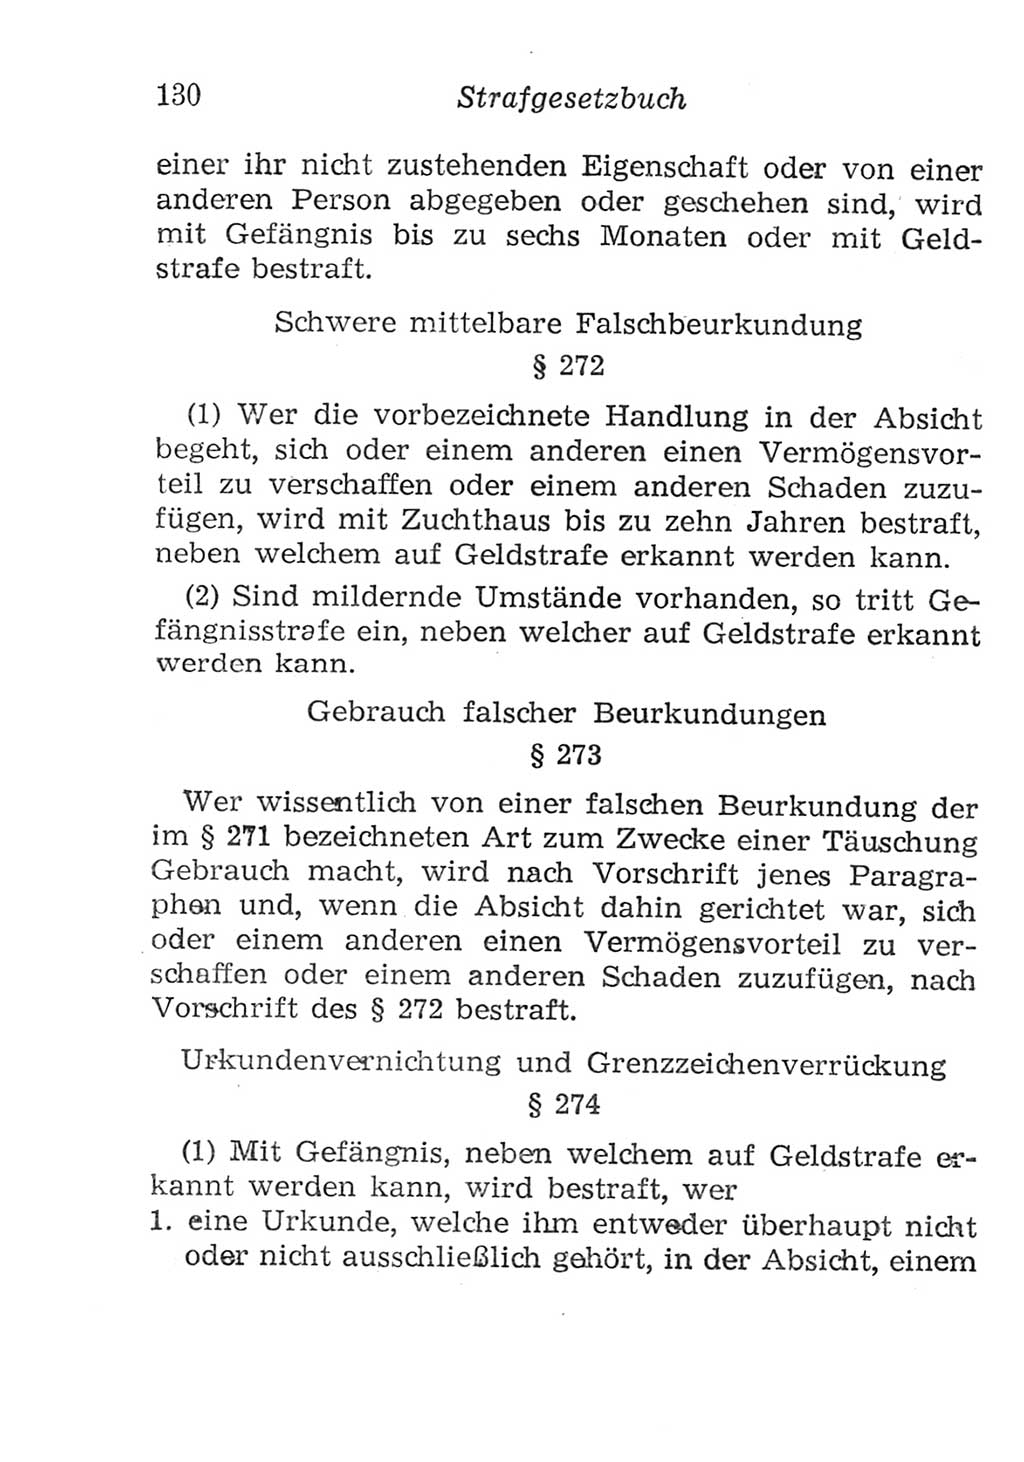 Strafgesetzbuch (StGB) und andere Strafgesetze [Deutsche Demokratische Republik (DDR)] 1957, Seite 130 (StGB Strafges. DDR 1957, S. 130)